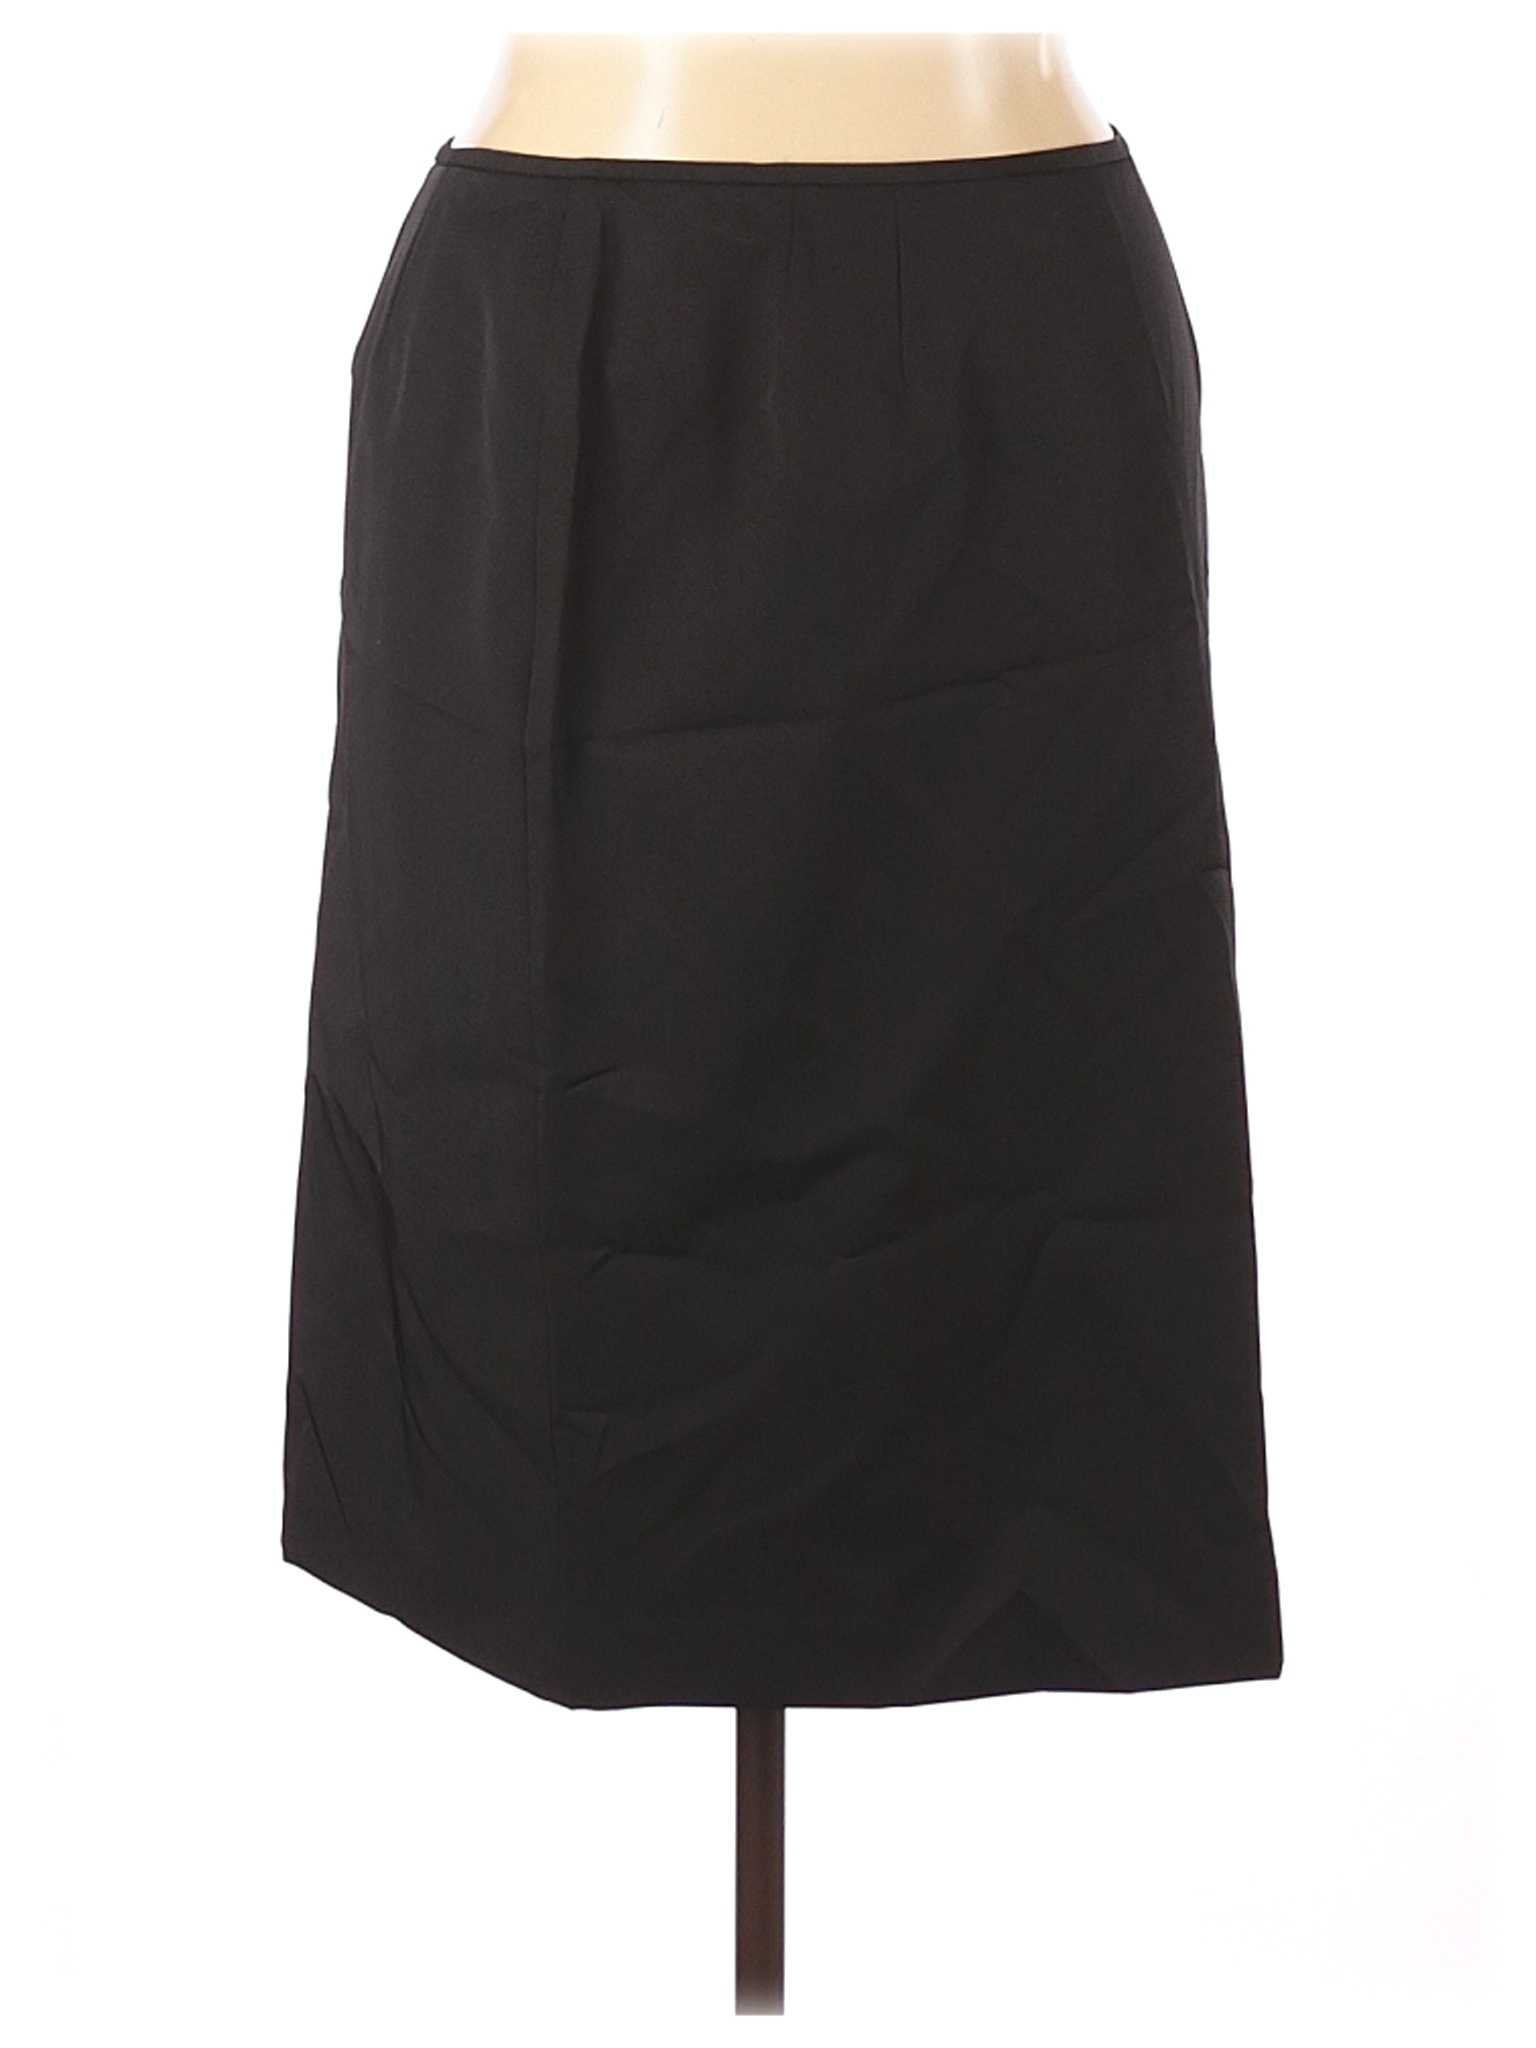 Le Suit Women Black Casual Skirt 16 | eBay